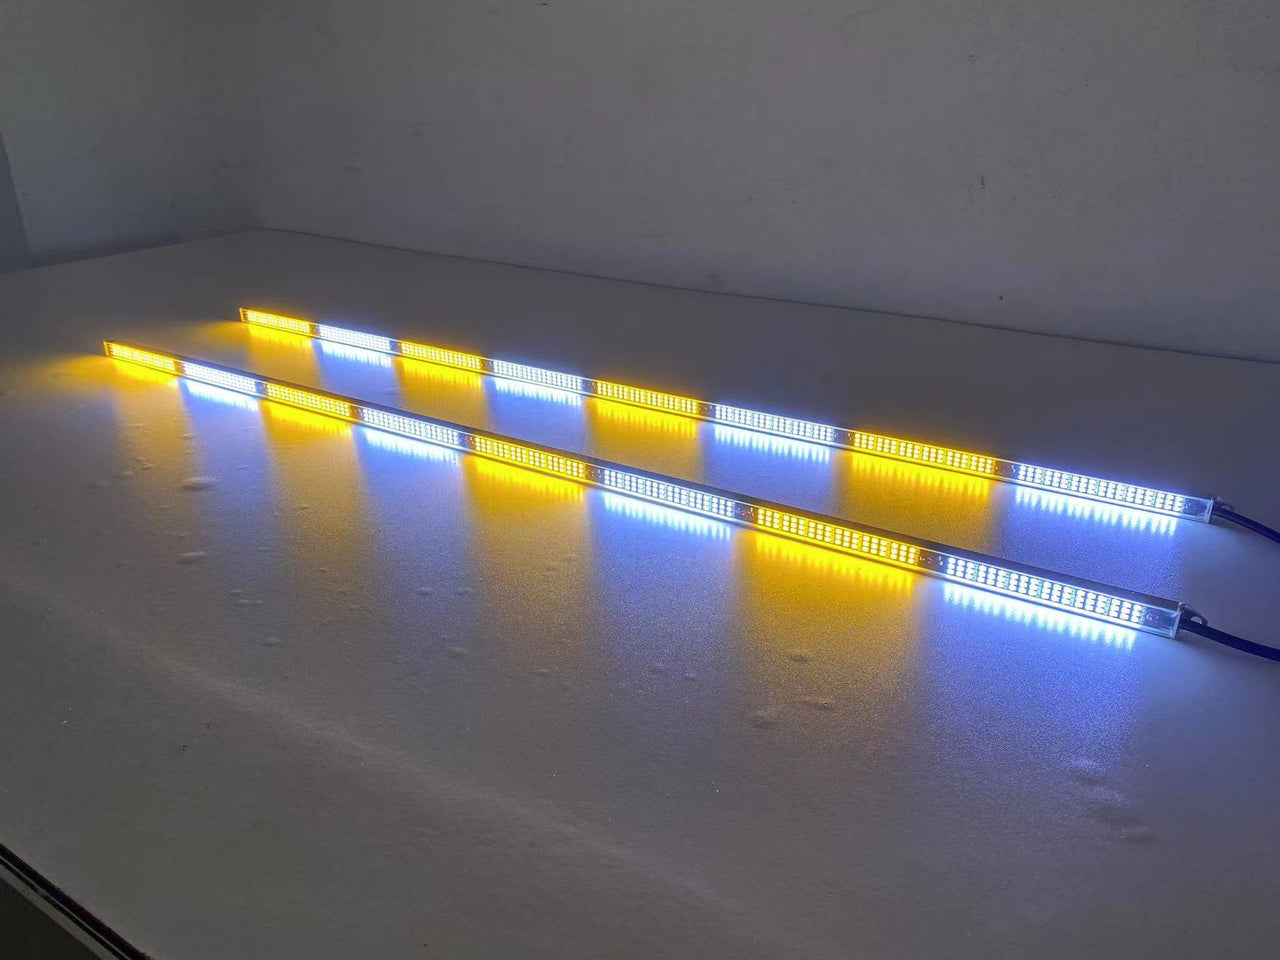 Triple Row LED Running Board Light Stick for Car, Trucks, Emergency Vehicles (2 packs)